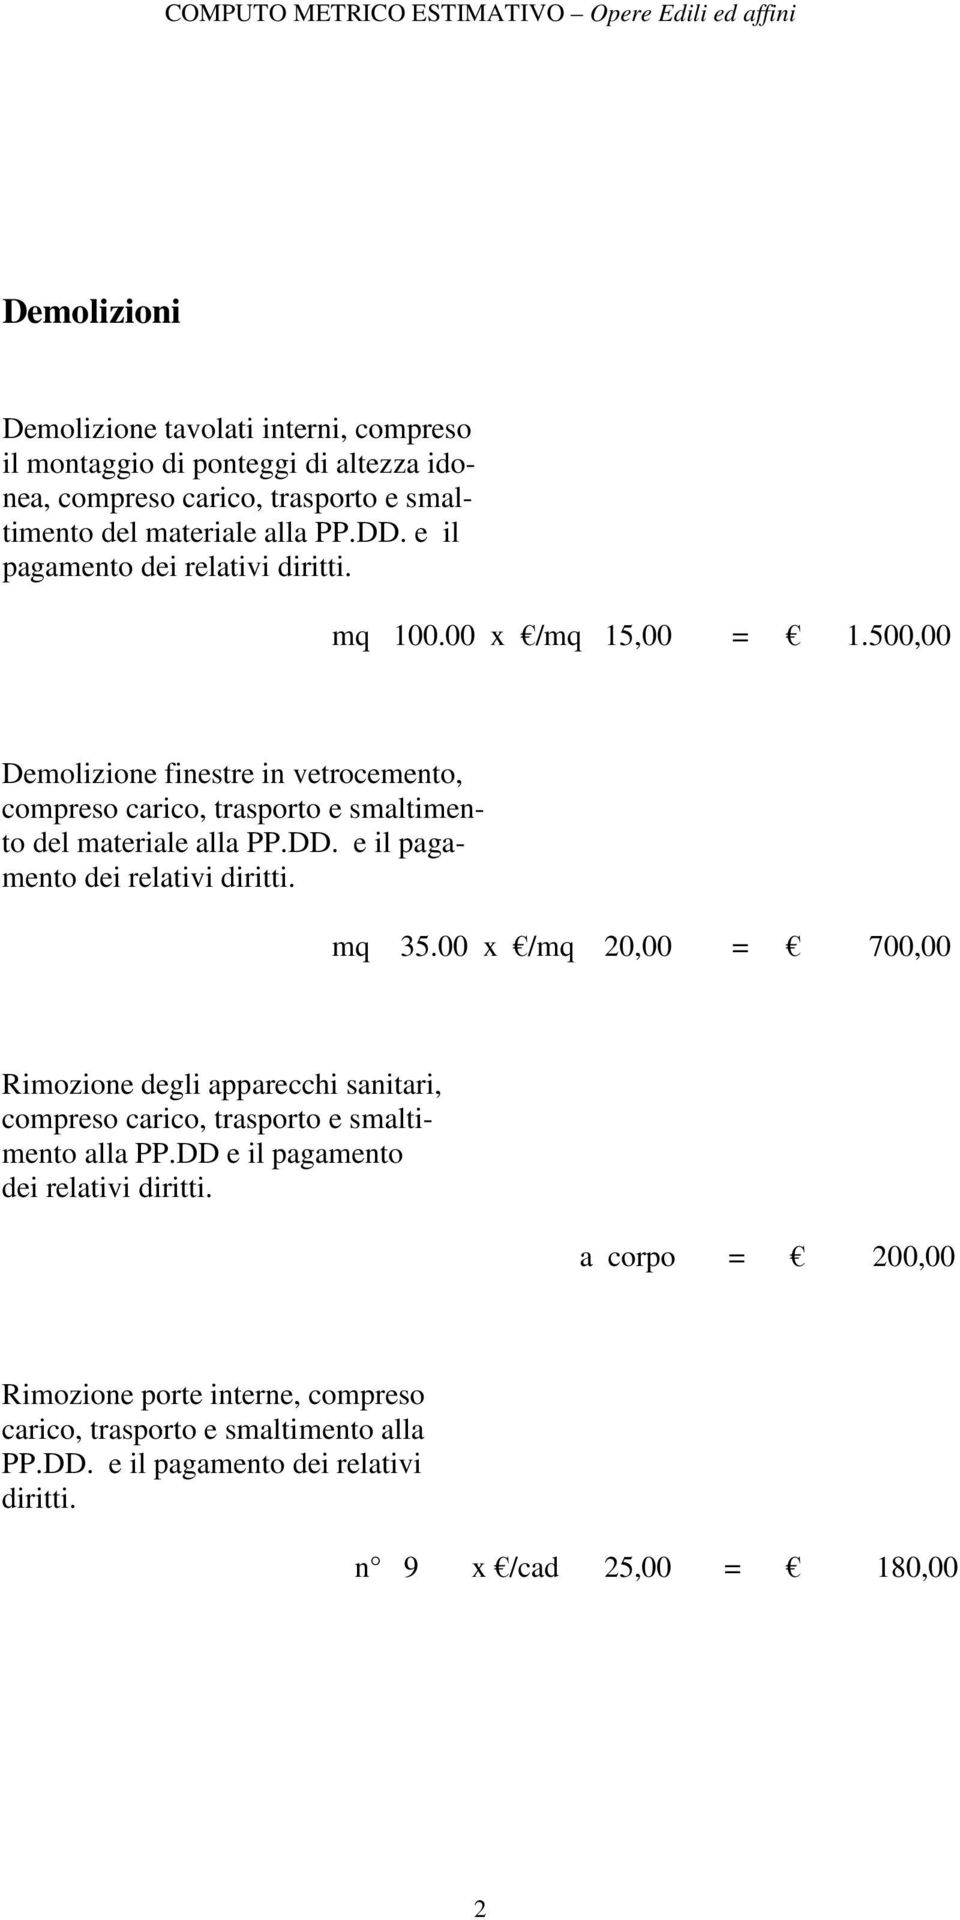 DD. e il pagamento dei relativi diritti. mq 35.00 x /mq 20,00 = 700,00 Rimozione degli apparecchi sanitari, compreso carico, trasporto e smaltimento alla PP.